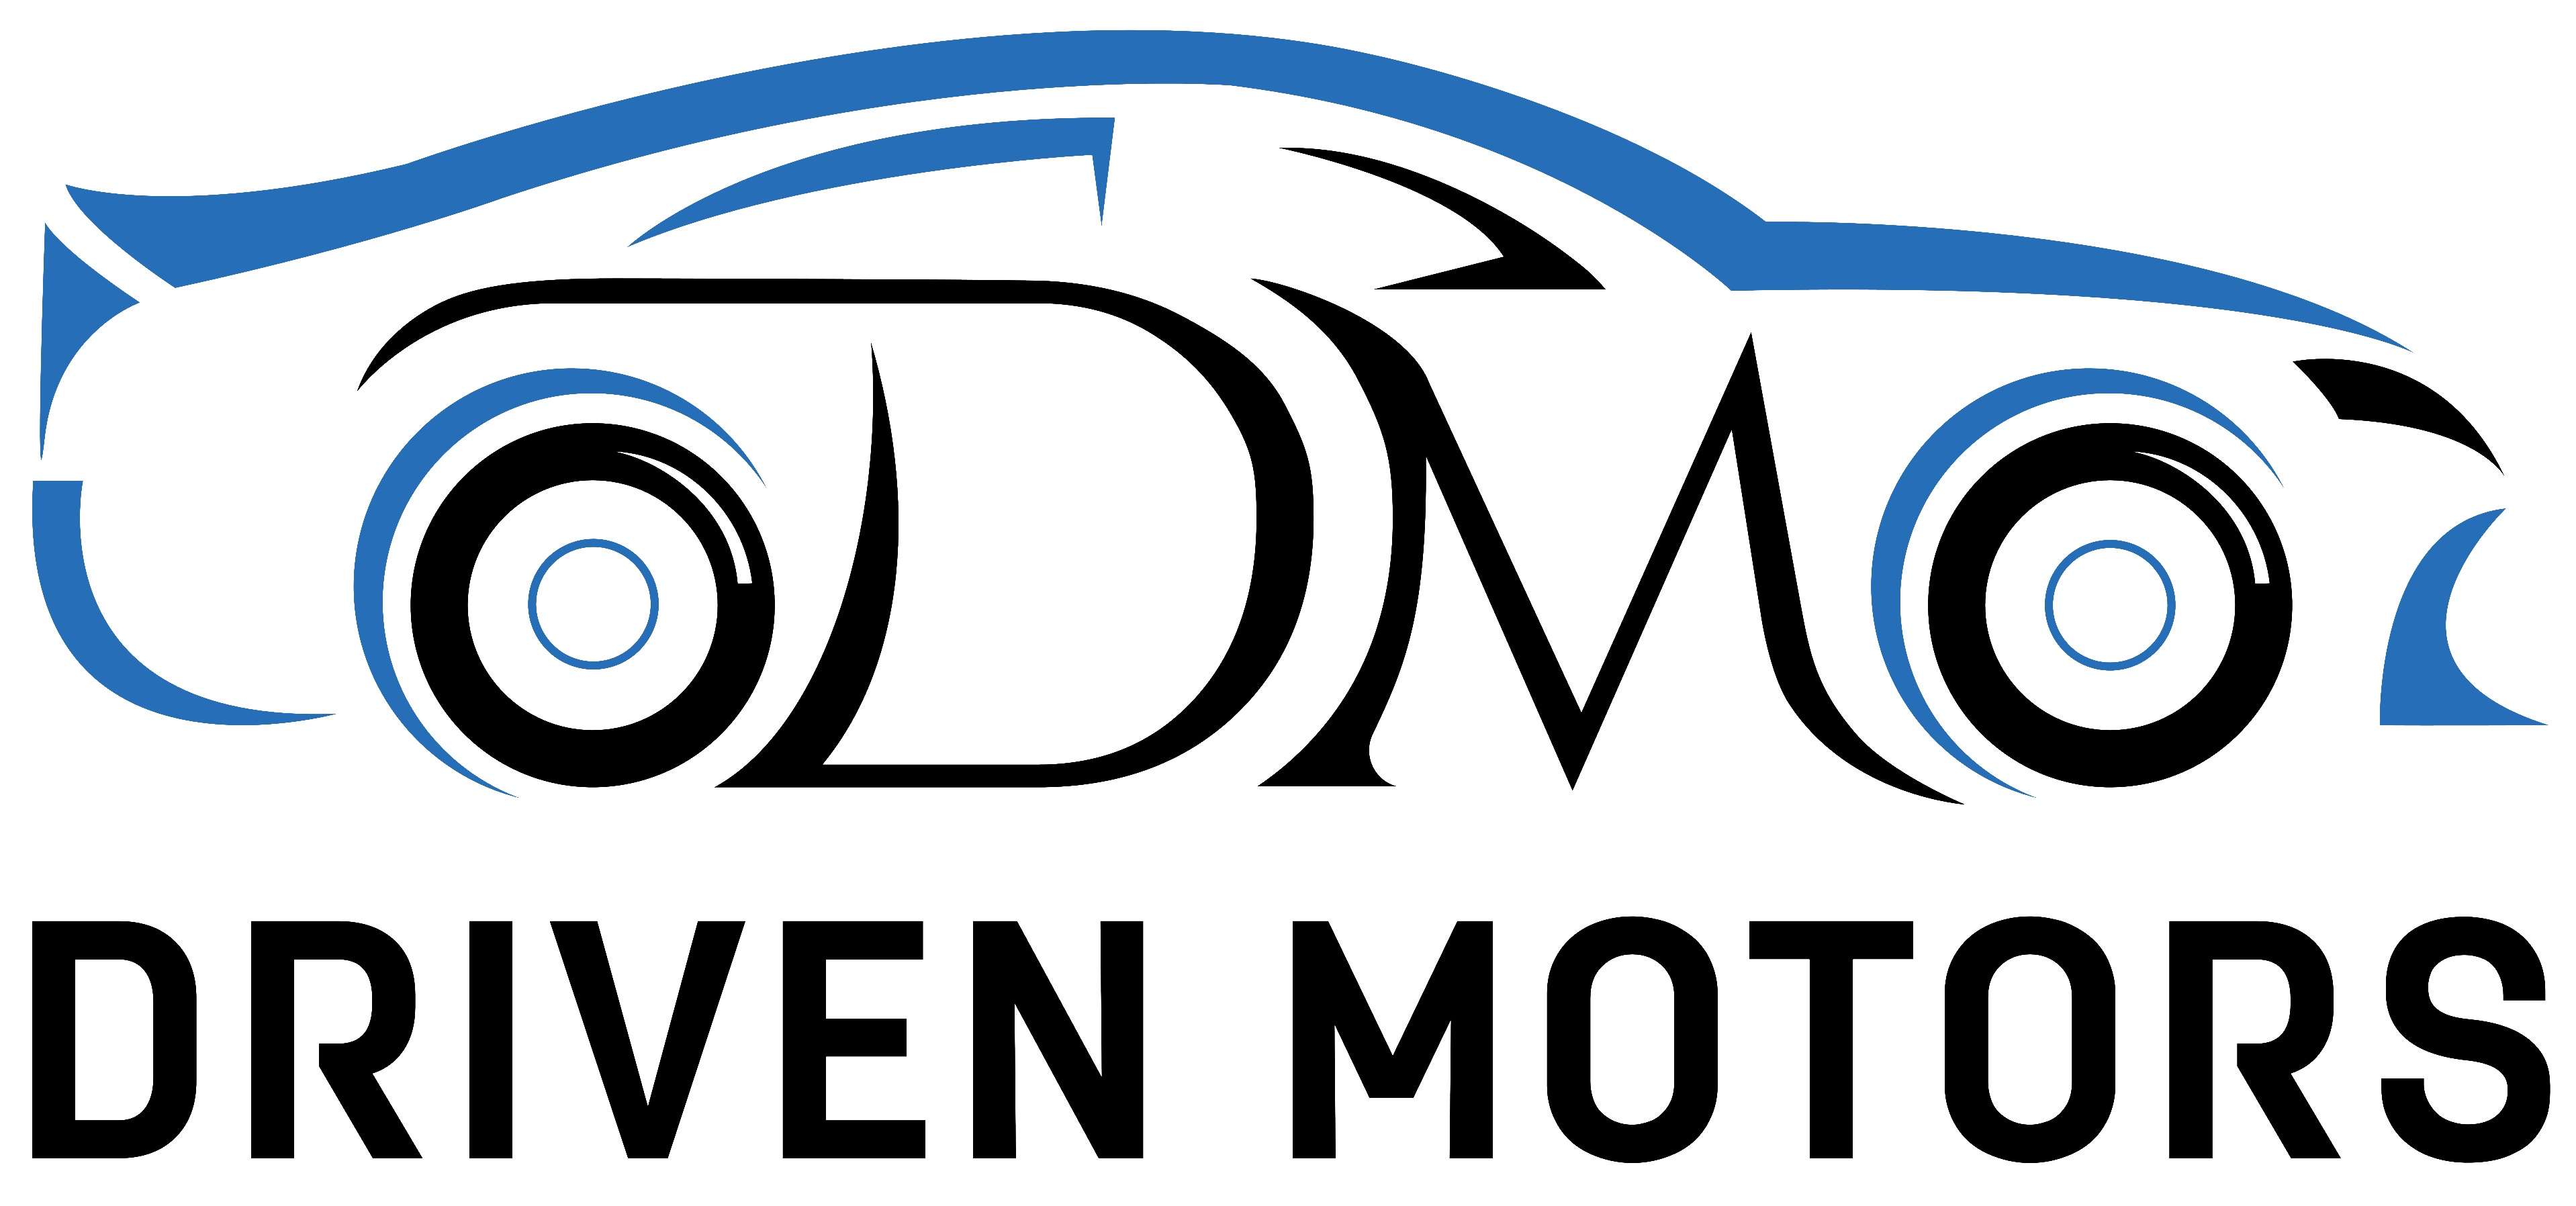 Driven Motors